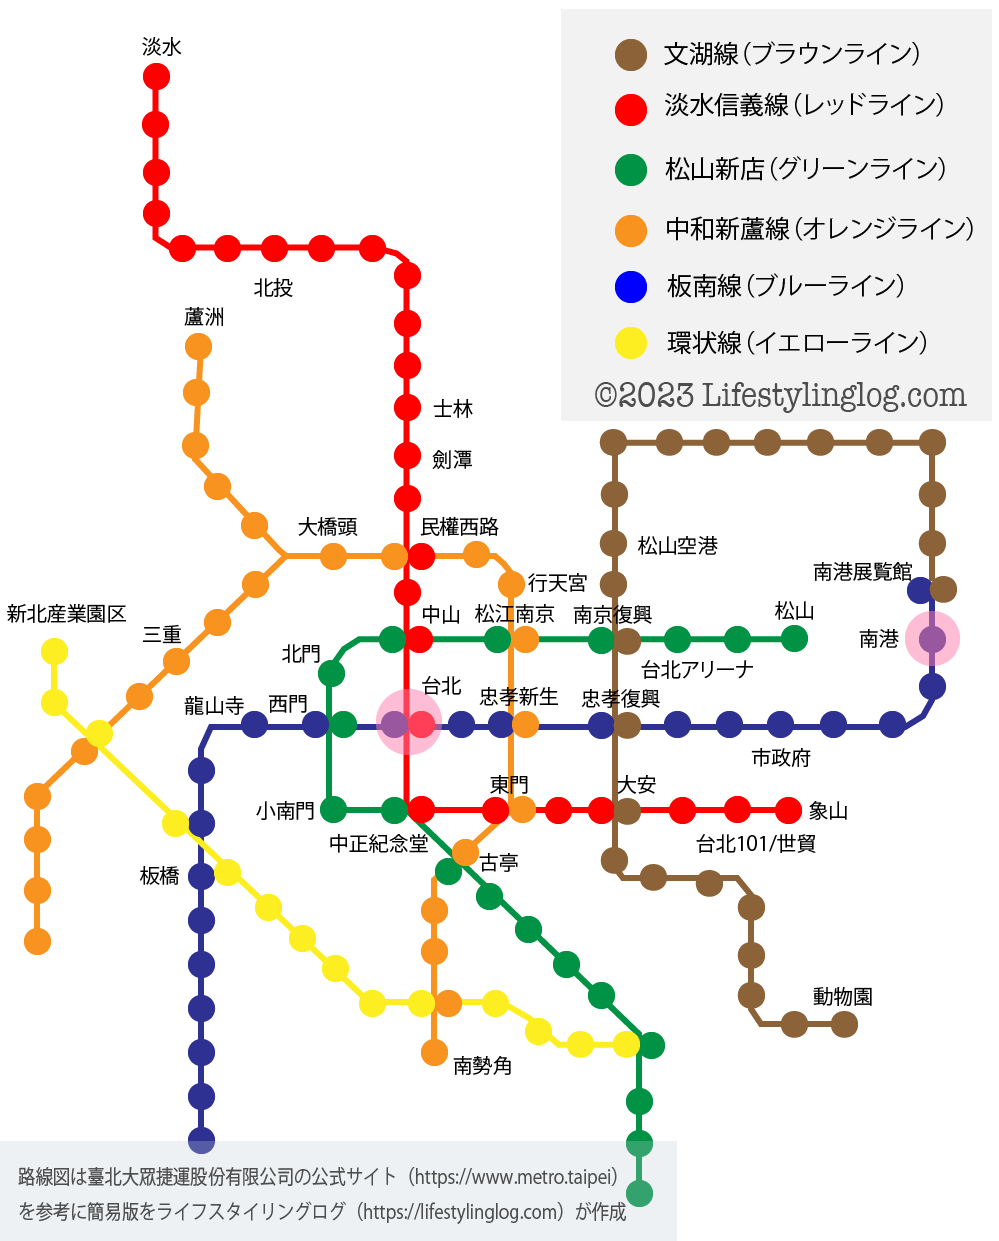 台北駅と南港駅の位置関係を示す路線図